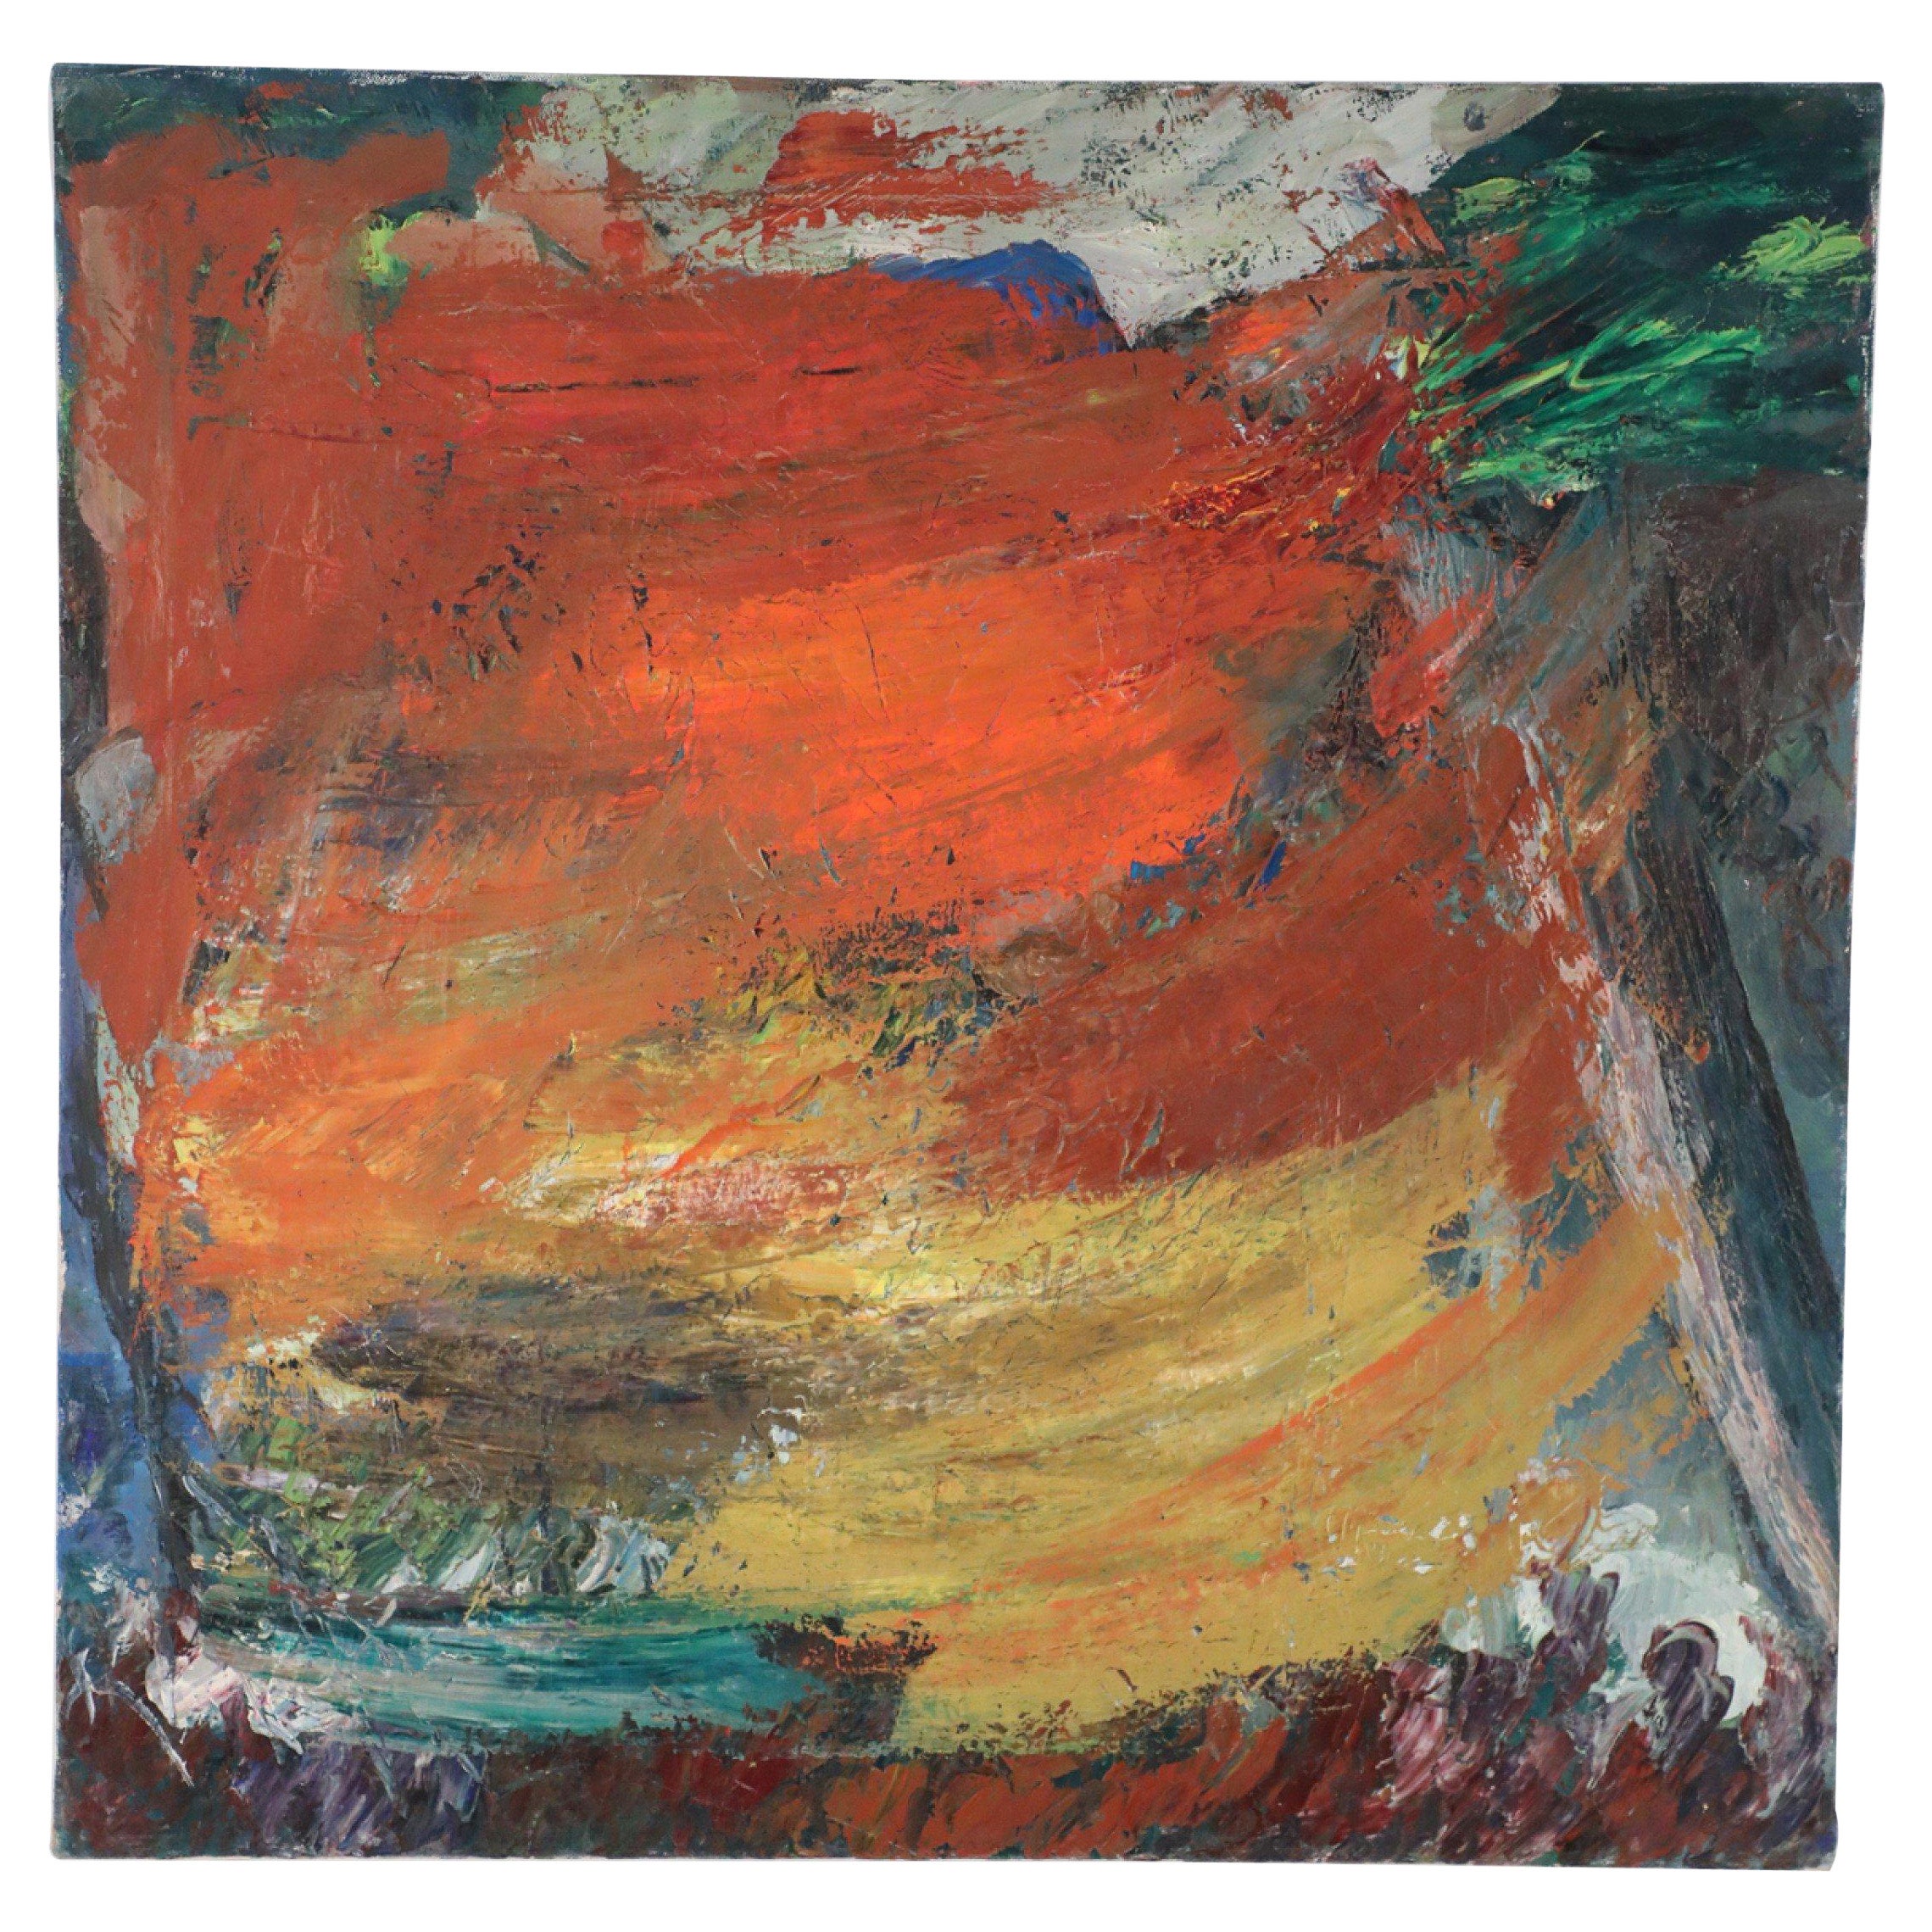 Peinture abstraite sur toile multicolore aux teintes chaudes